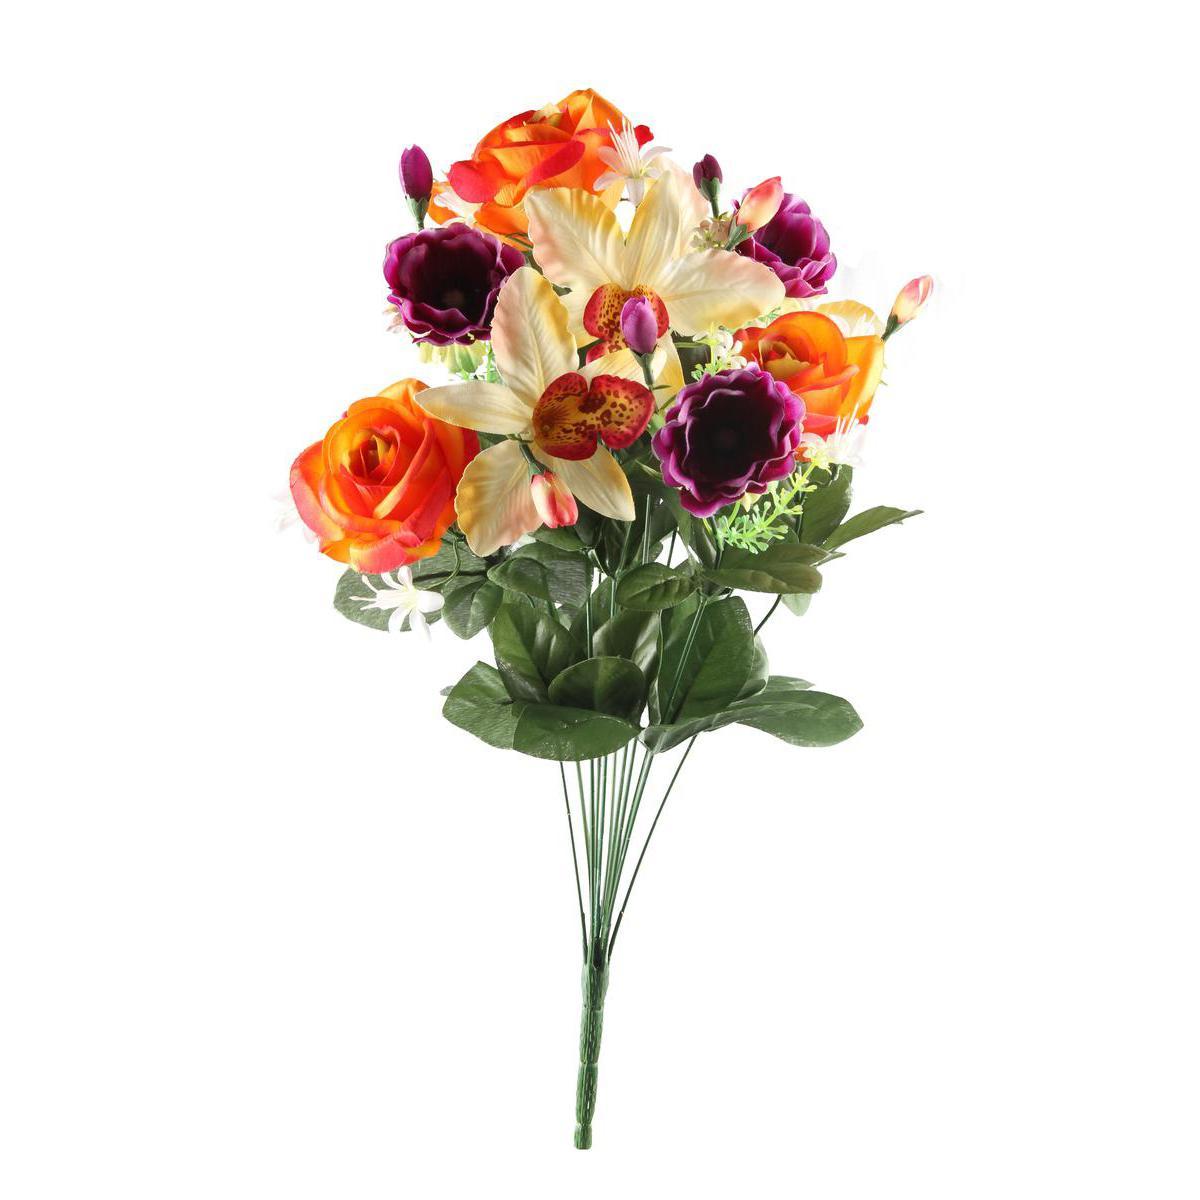 Bouquet de roses, orchidées et anémones - Plastique et polyester - Hauteur 53 cm - Orange, violet, beige